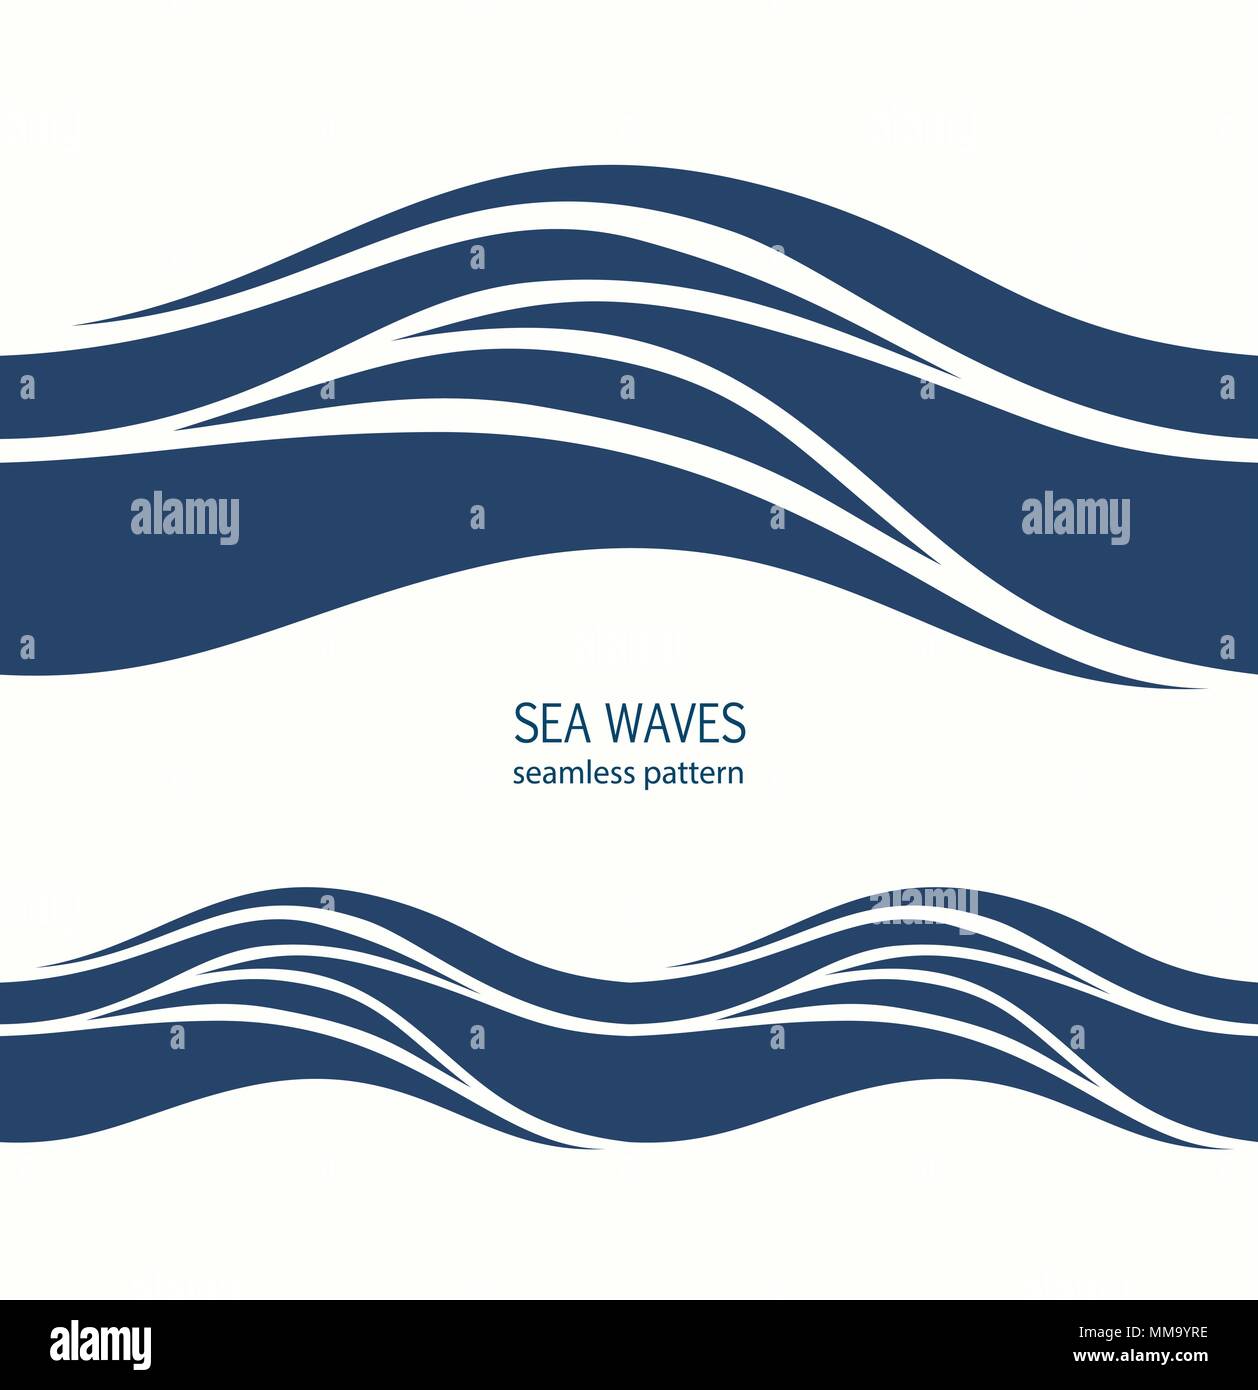 Transparente avec motif Marine vagues bleu stylisé sur un fond clair. Eau vague abstract design. Illustration de Vecteur